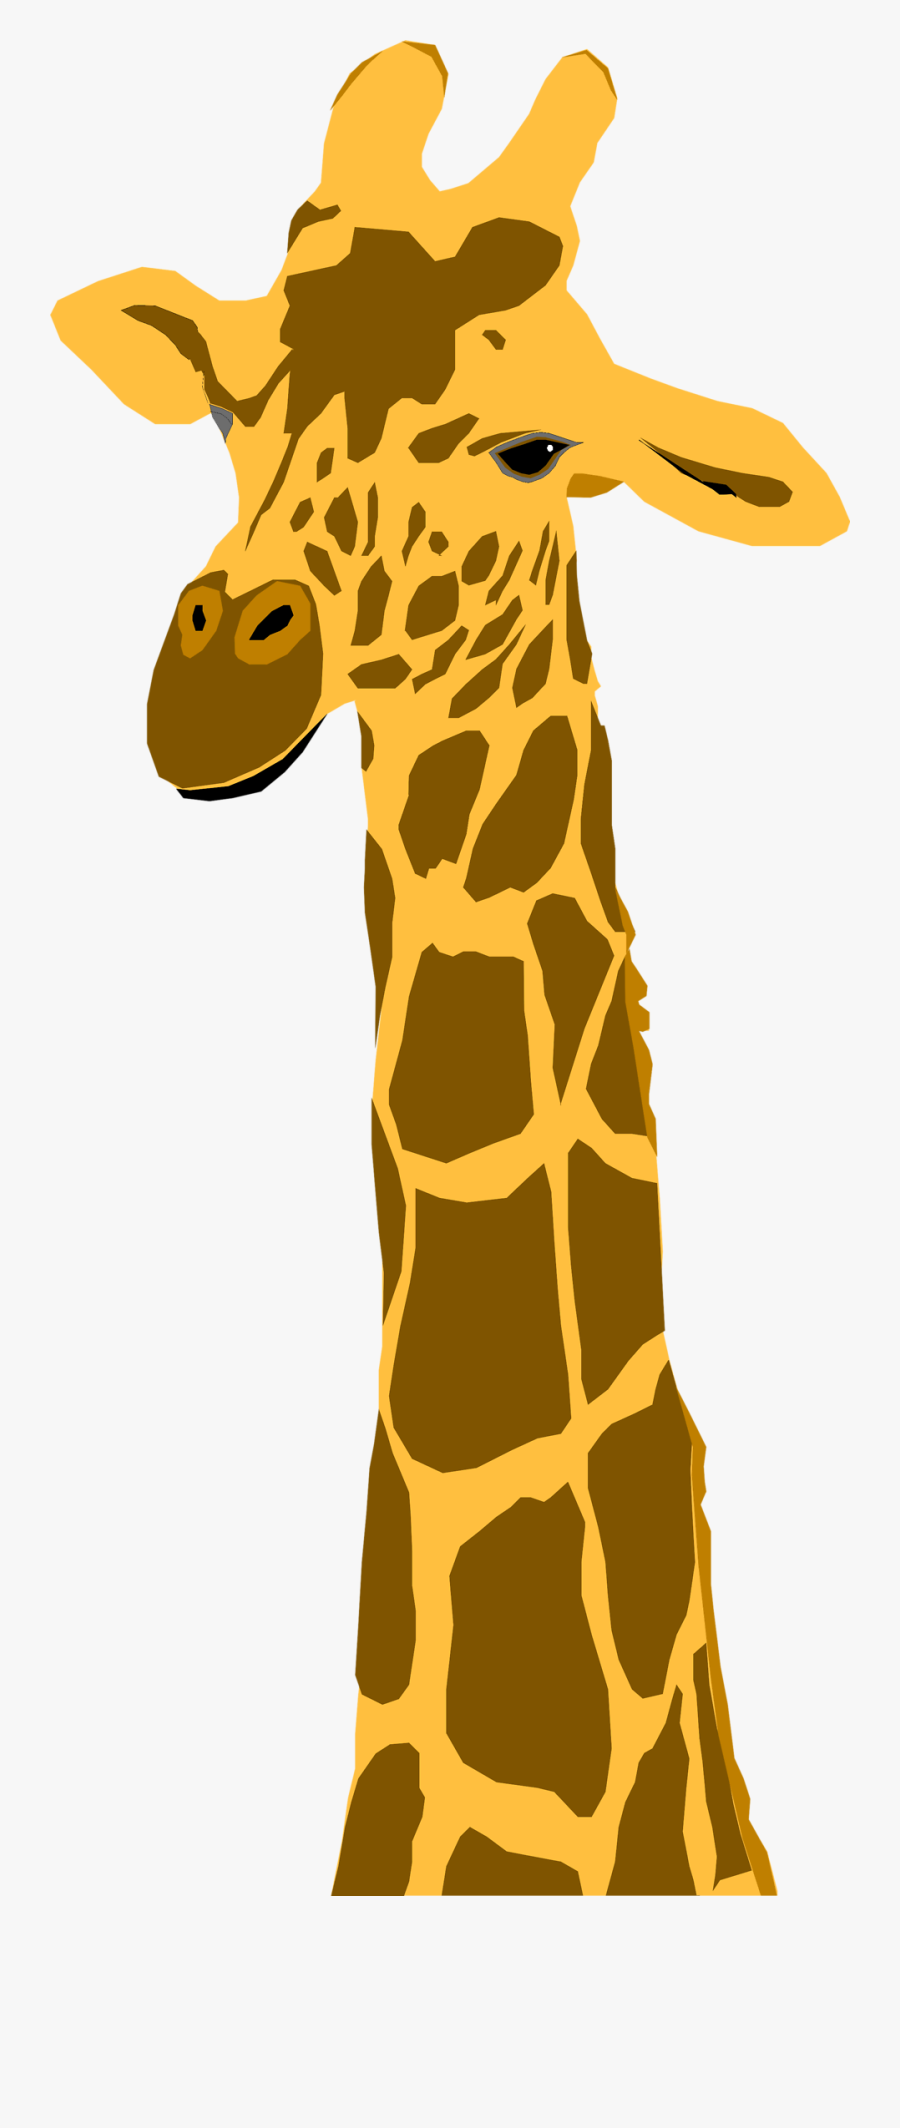 Giraffe Clipart Transparent Background - Transparent Background Giraffe Clipart, Transparent Clipart